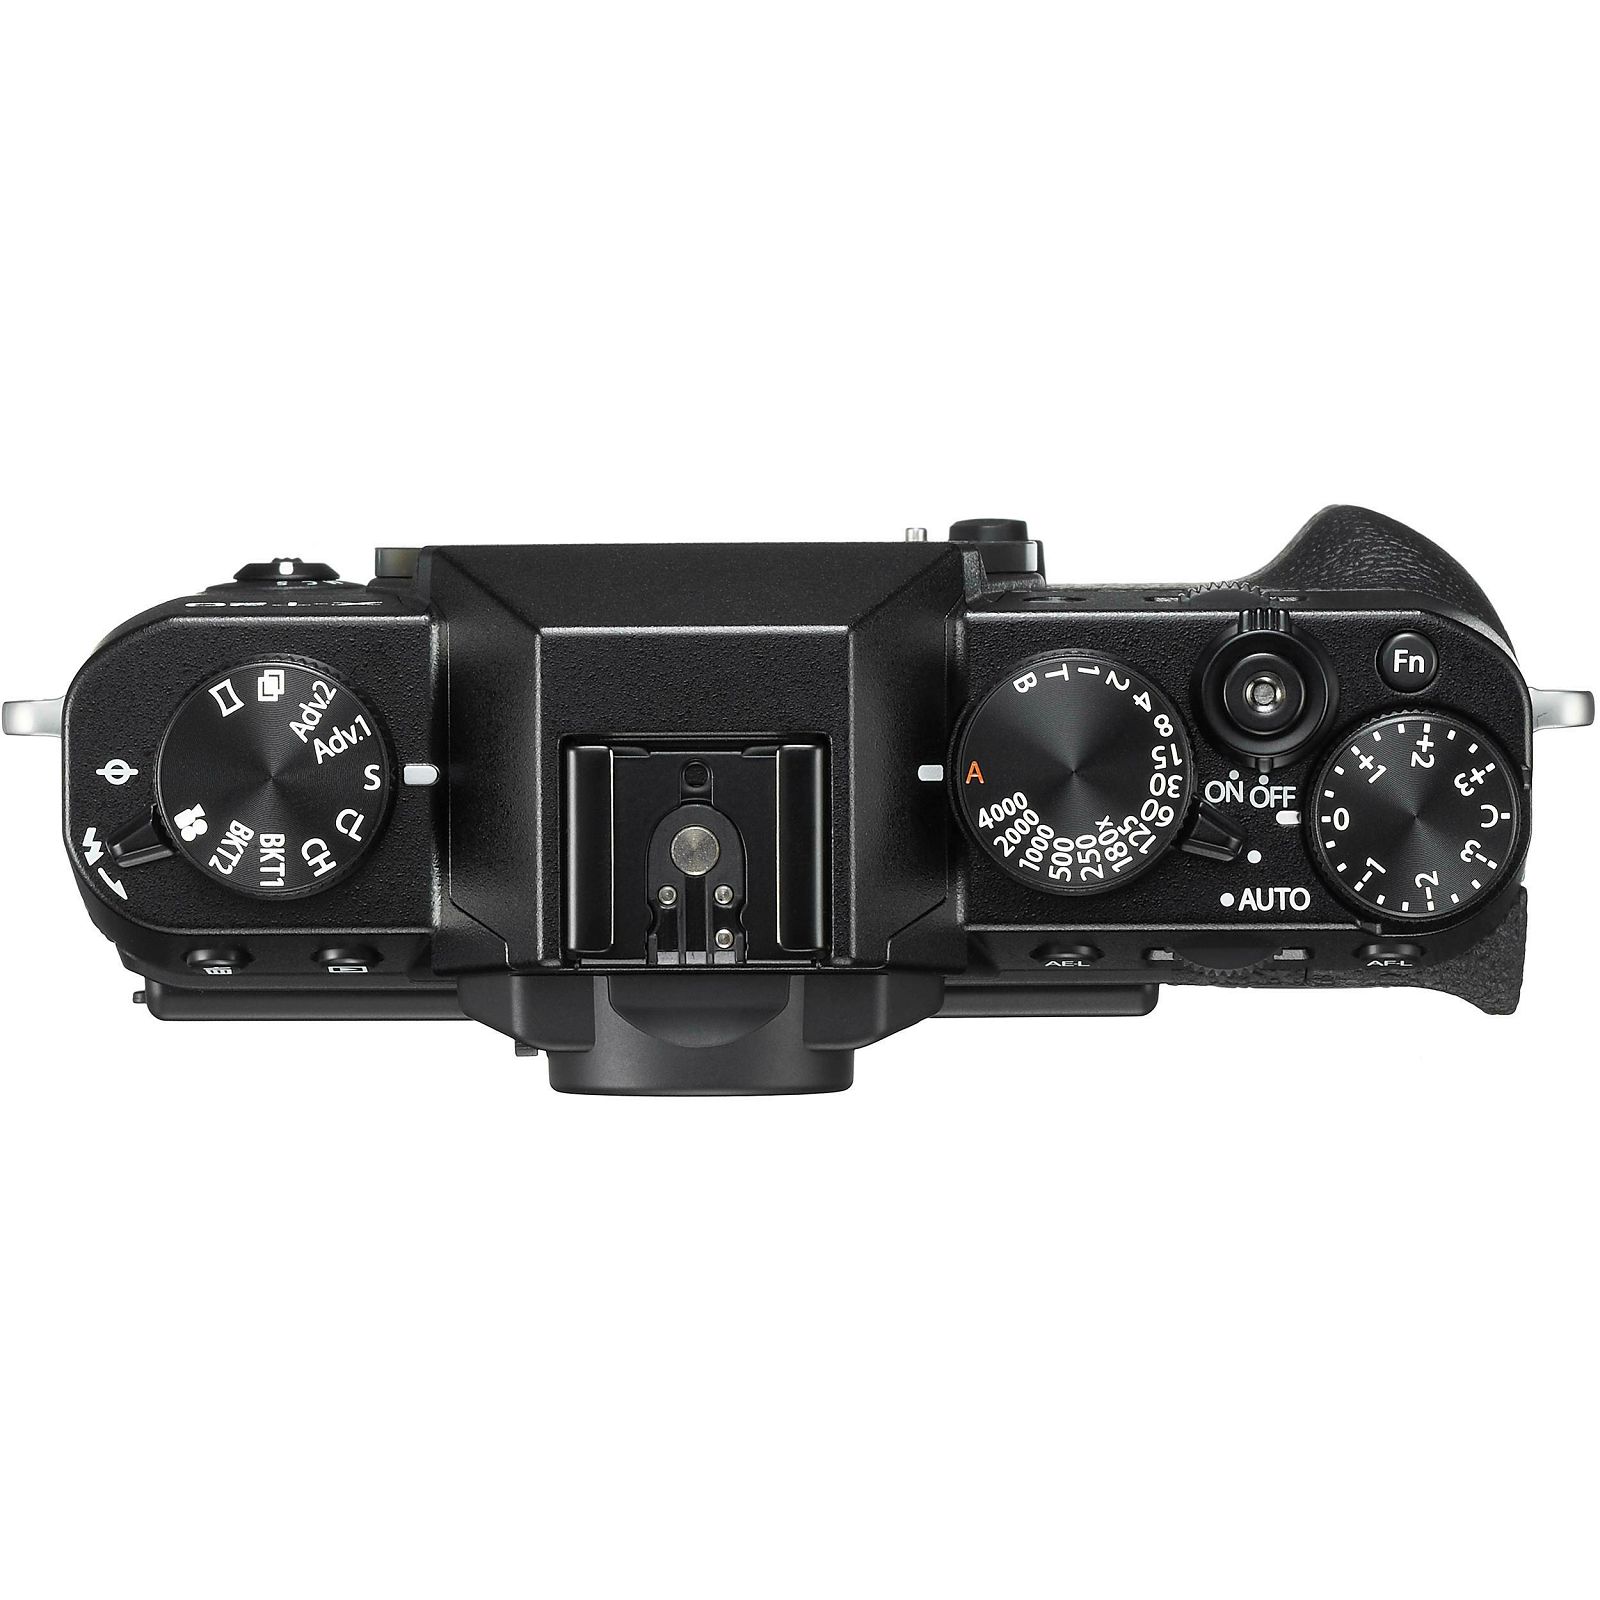 Fujifilm X-T20 + XC 16-50 + 50-230 Black crni digitalni mirrorless fotoaparat s objektivom 16-55mm f3.5-5.6 OIS II Fuji